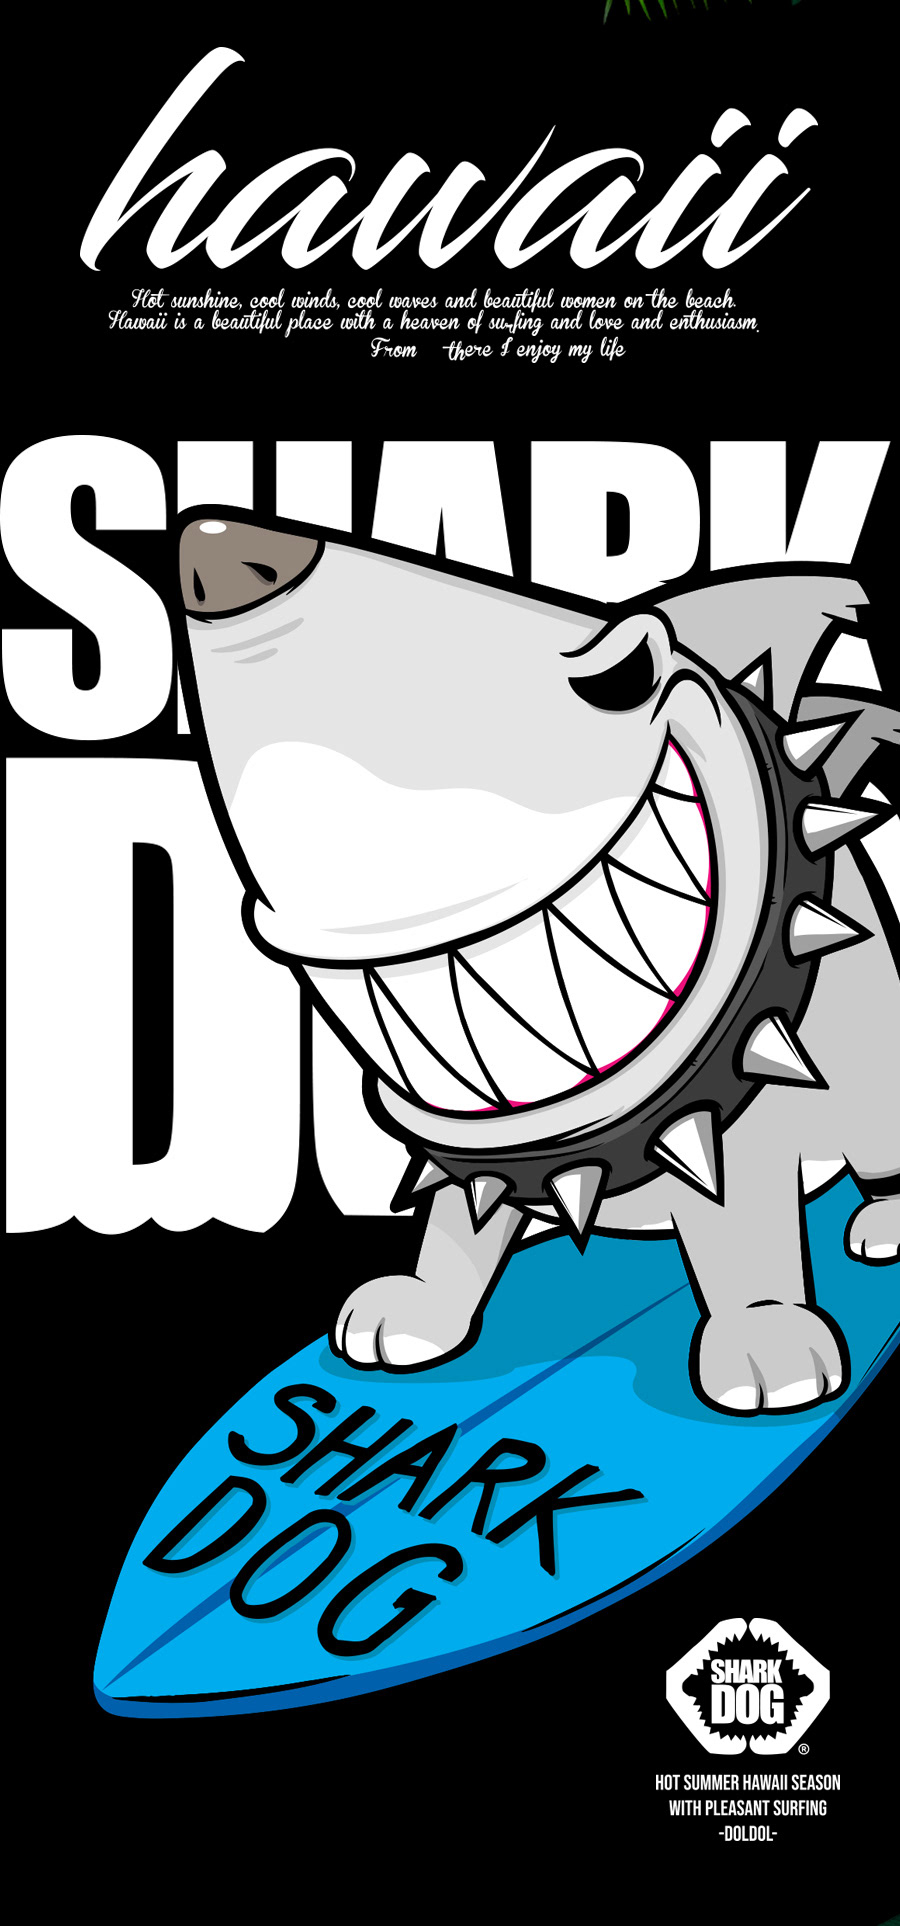 sharkdog shark dog characterdesign doldoldesign Surf HAWAII Character surfing 샤크독